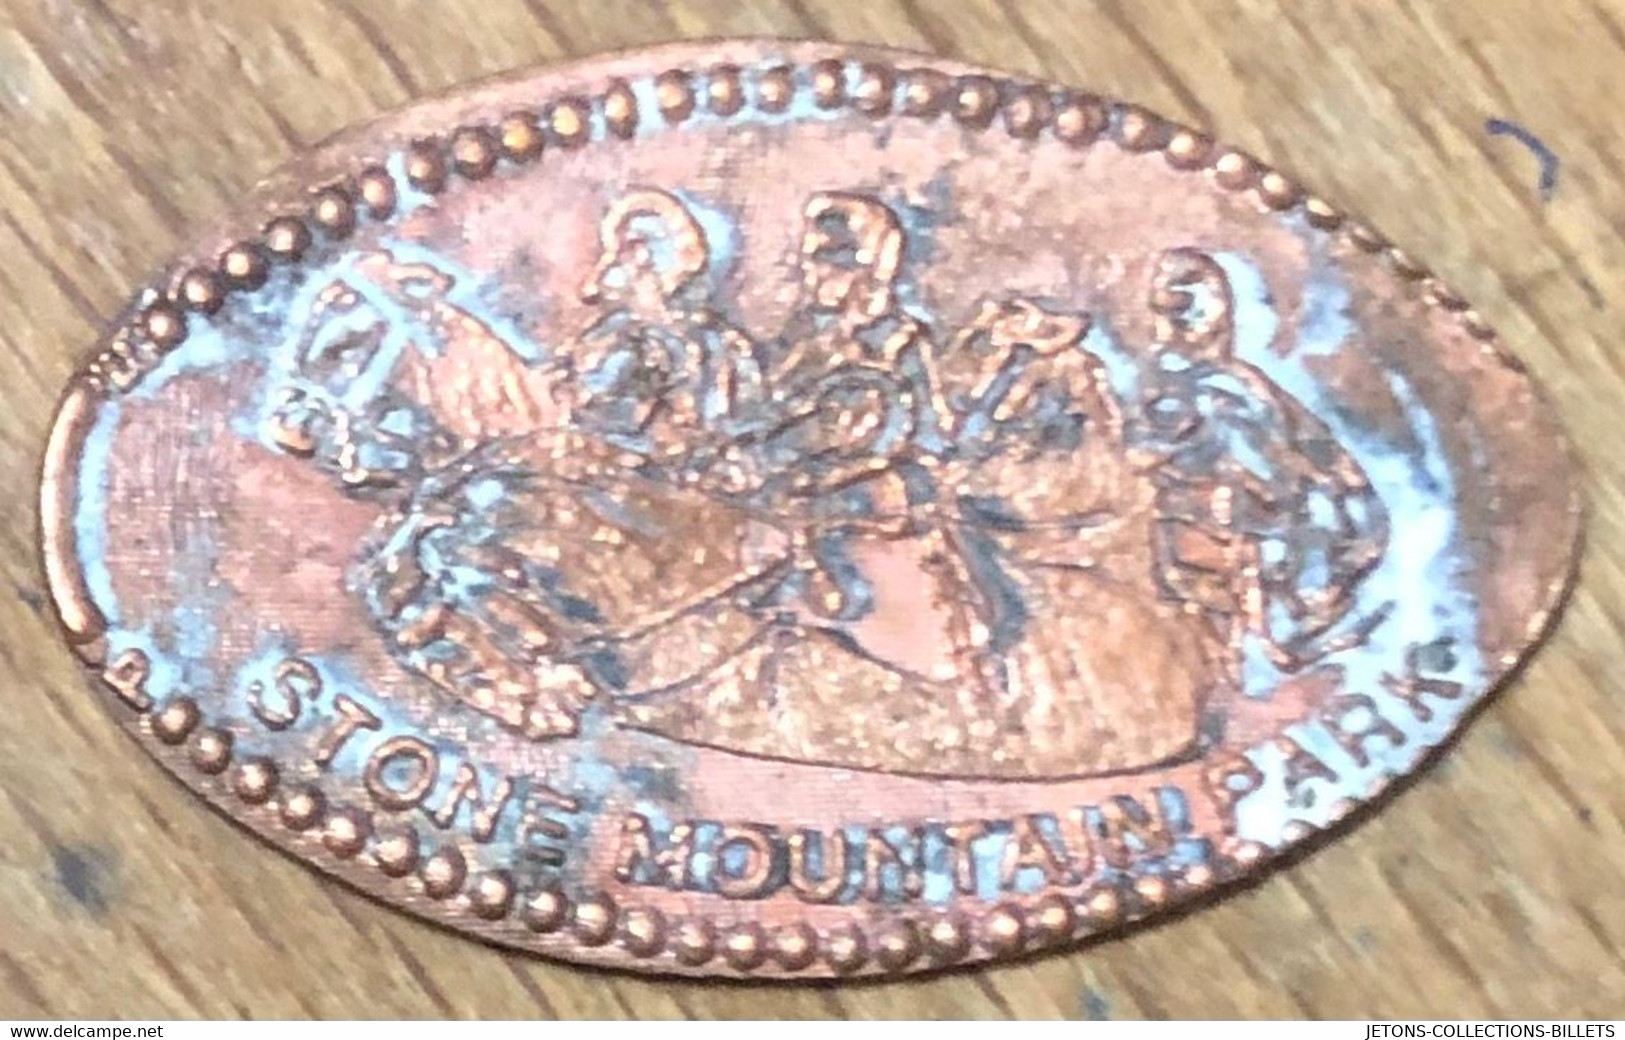 ÉTATS-UNIS USA STONE MOUNTAIN PARK PIÈCE ÉCRASÉE PENNY ELONGATED COIN MEDAILLE TOURISTIQUE MEDALS TOKENS - Souvenir-Medaille (elongated Coins)